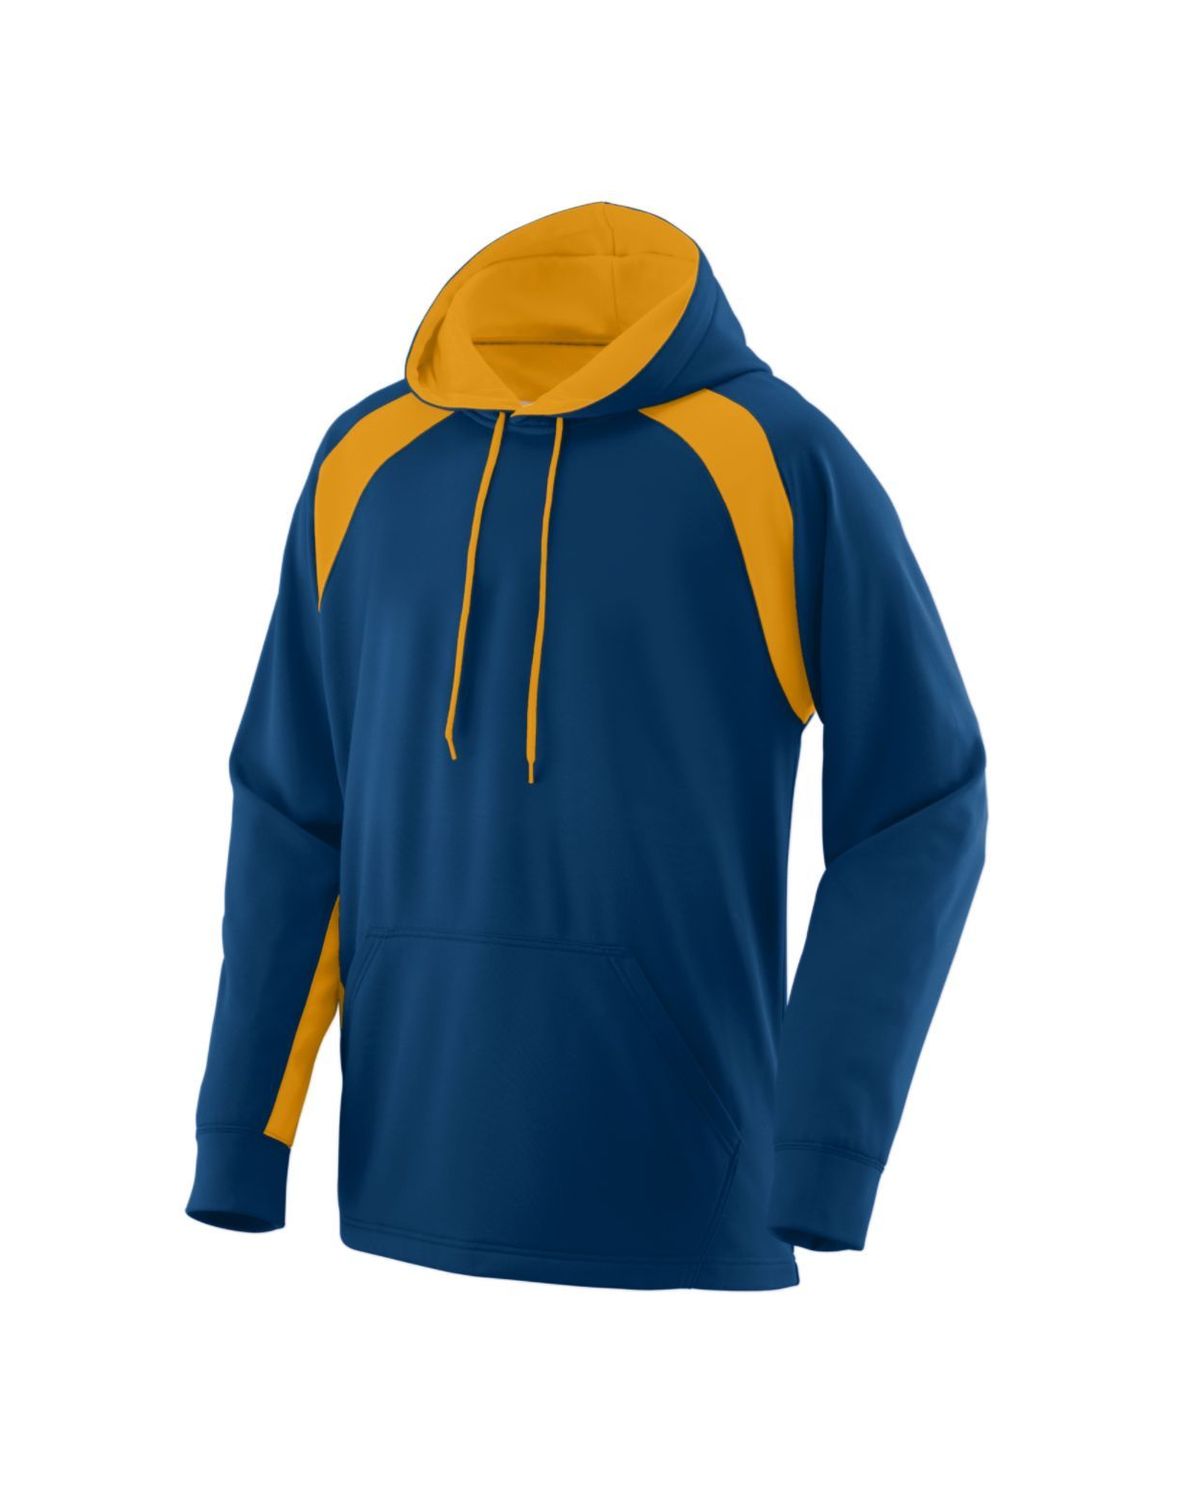 'Augusta Sportswear 5527-C Fanatic Hooded Sweatshirt'